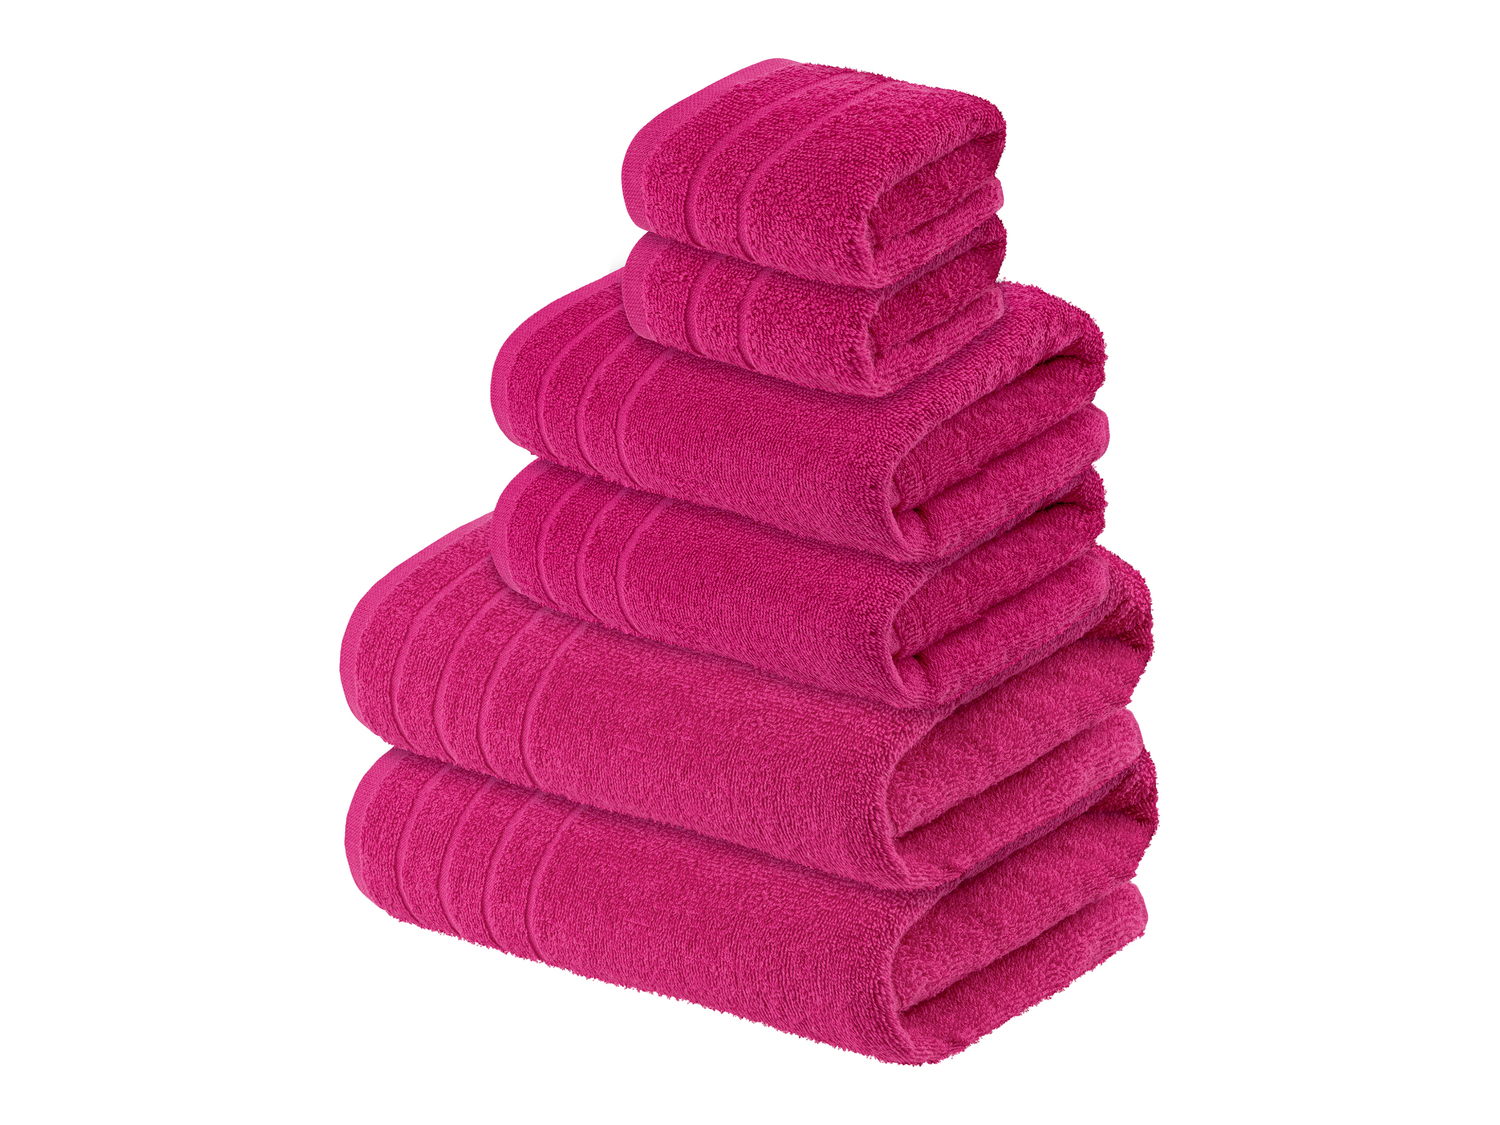 Set asciugamani Livarno, prezzo 14.99 &#8364; 
6 pezzi 
- Puro cotone
- Misure:
- ...